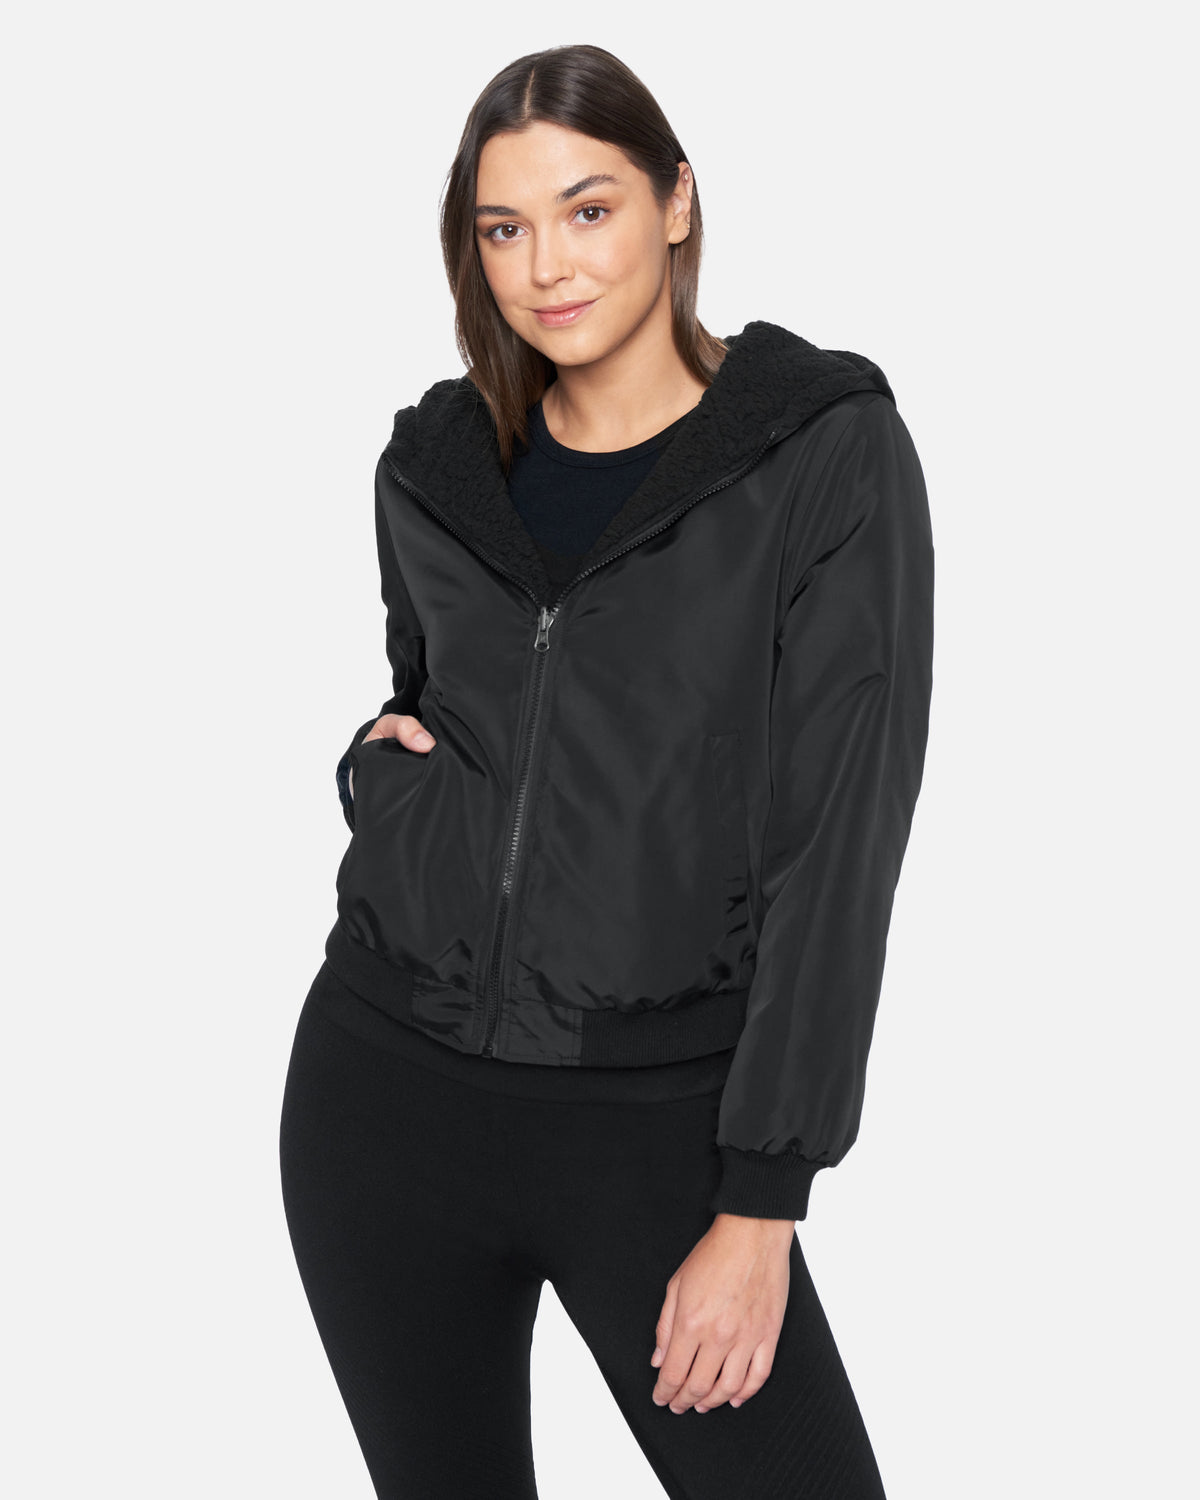 Women's Jackets & Outerwear | Hurley